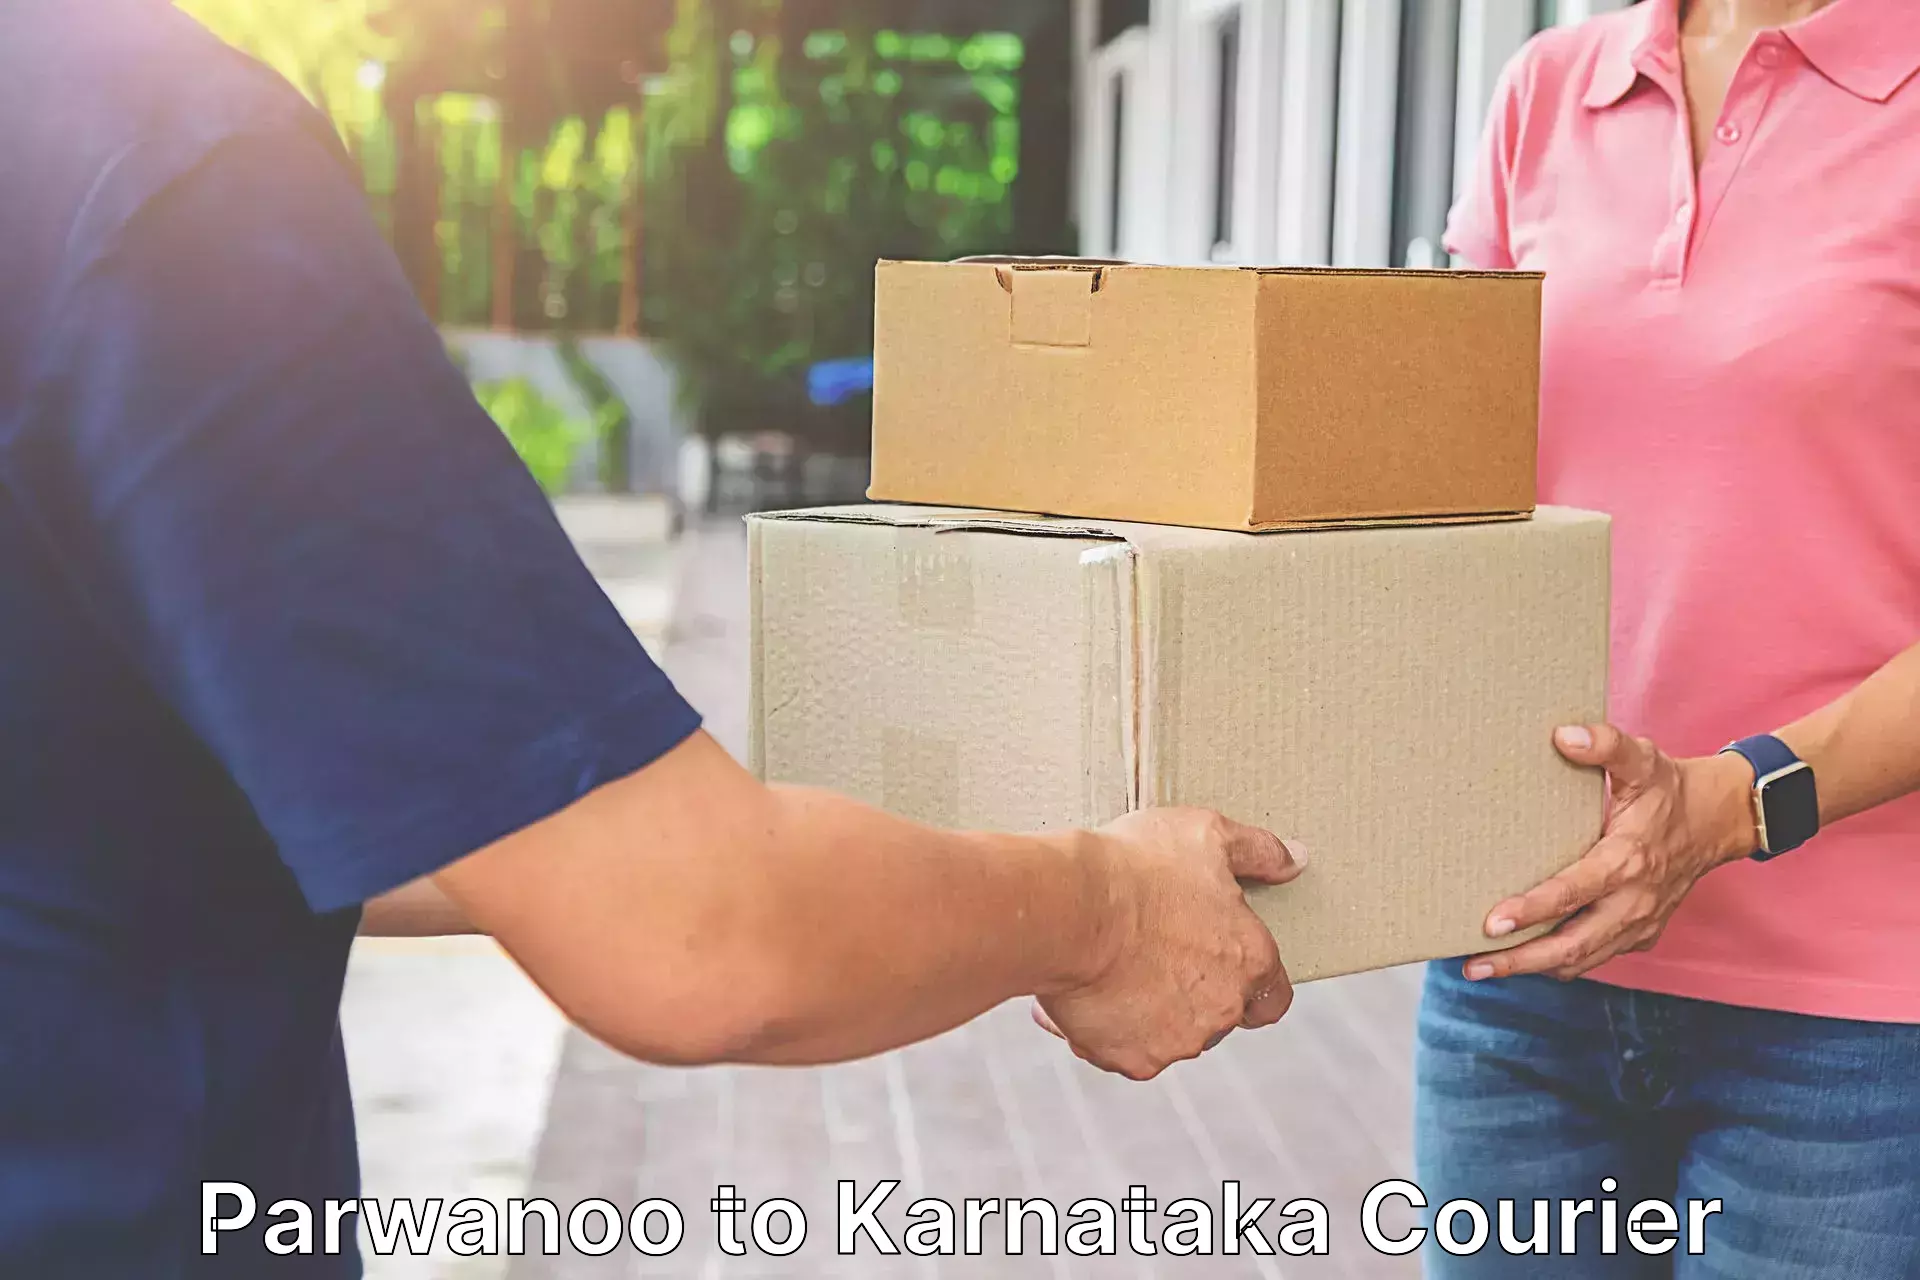 Express postal services Parwanoo to Kanjarakatte